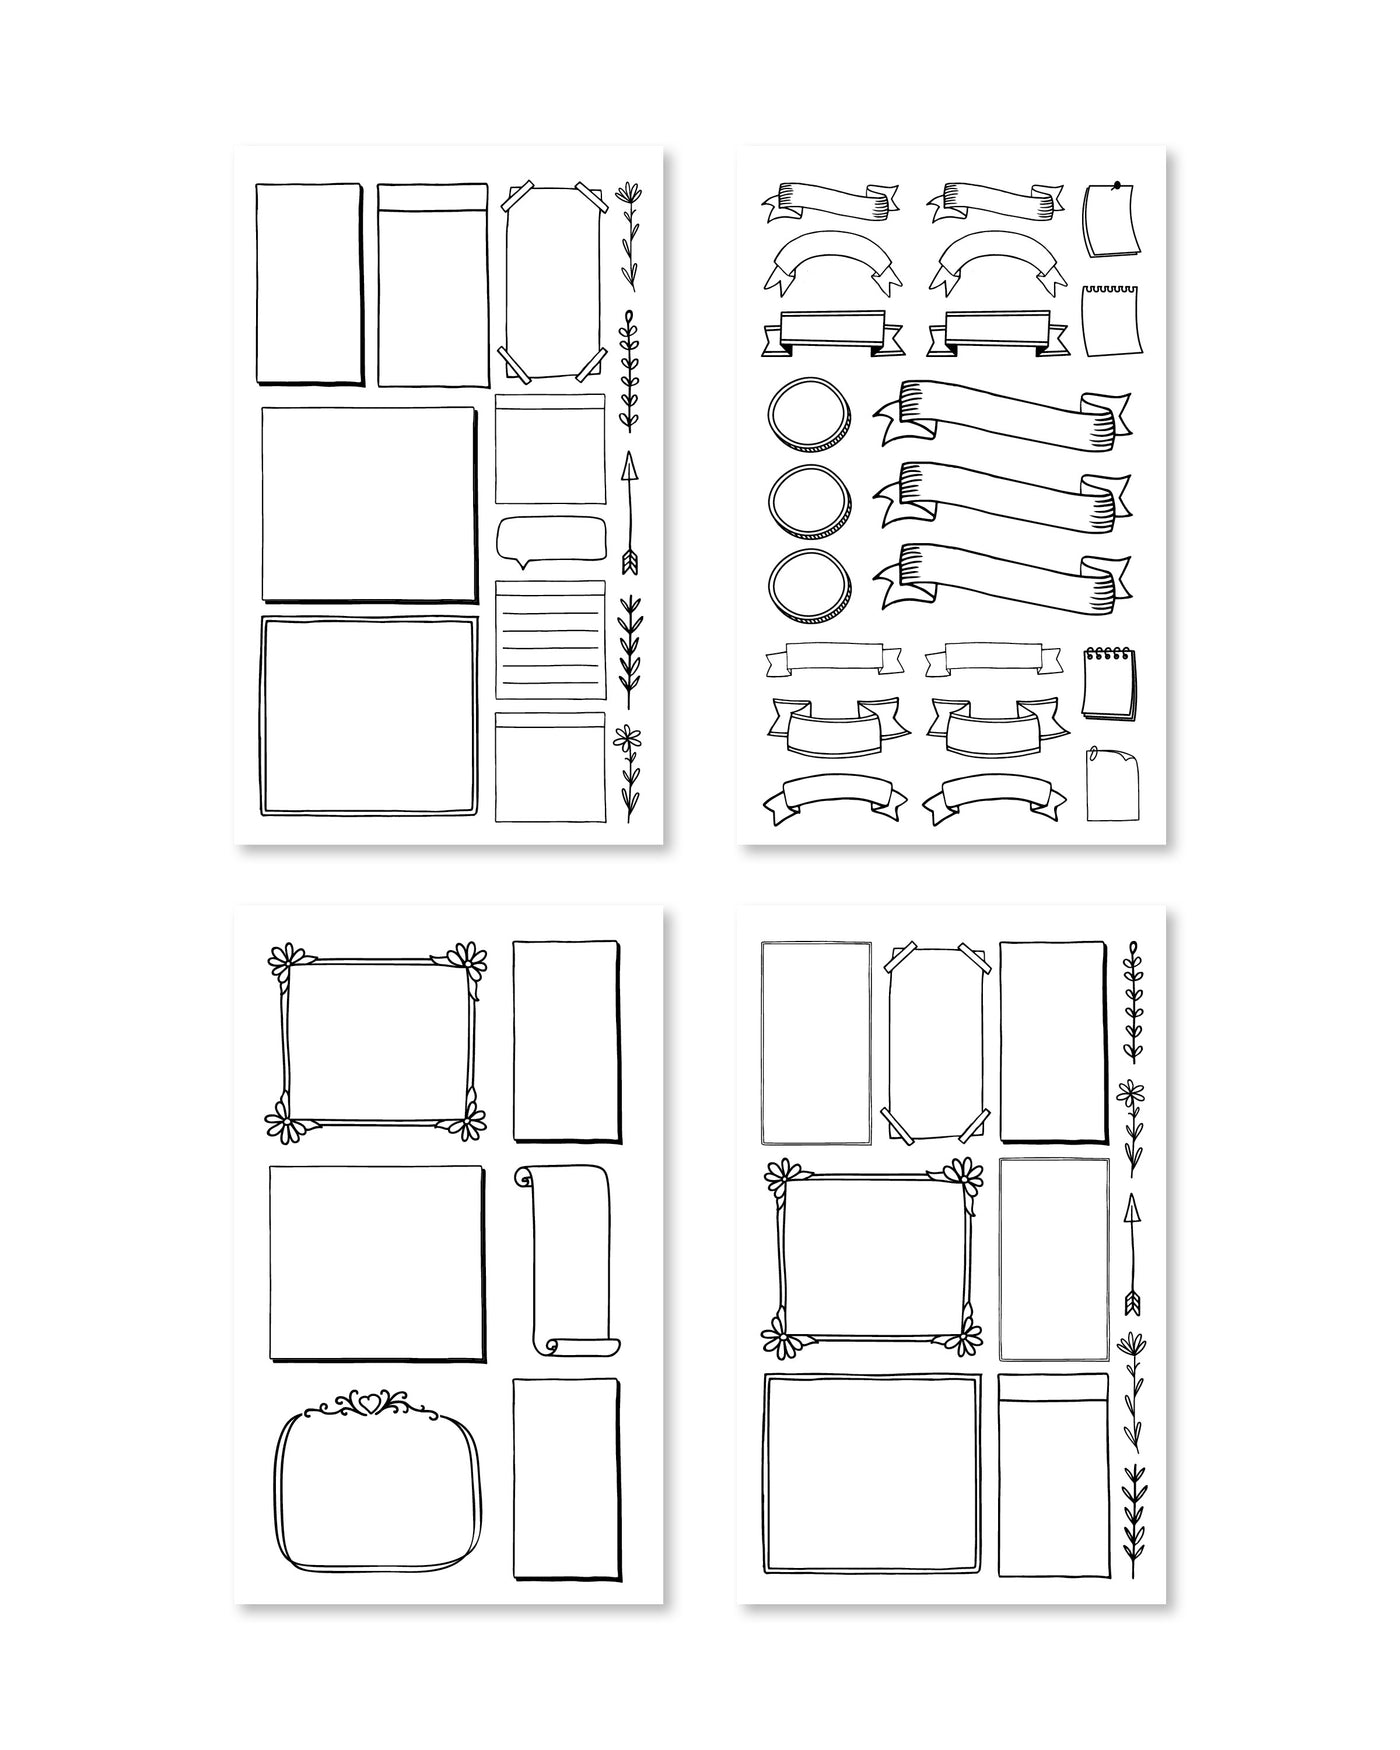 Bullet Journal Digital Sticker Book - Rongrong DeVoe - Shop Rongrong